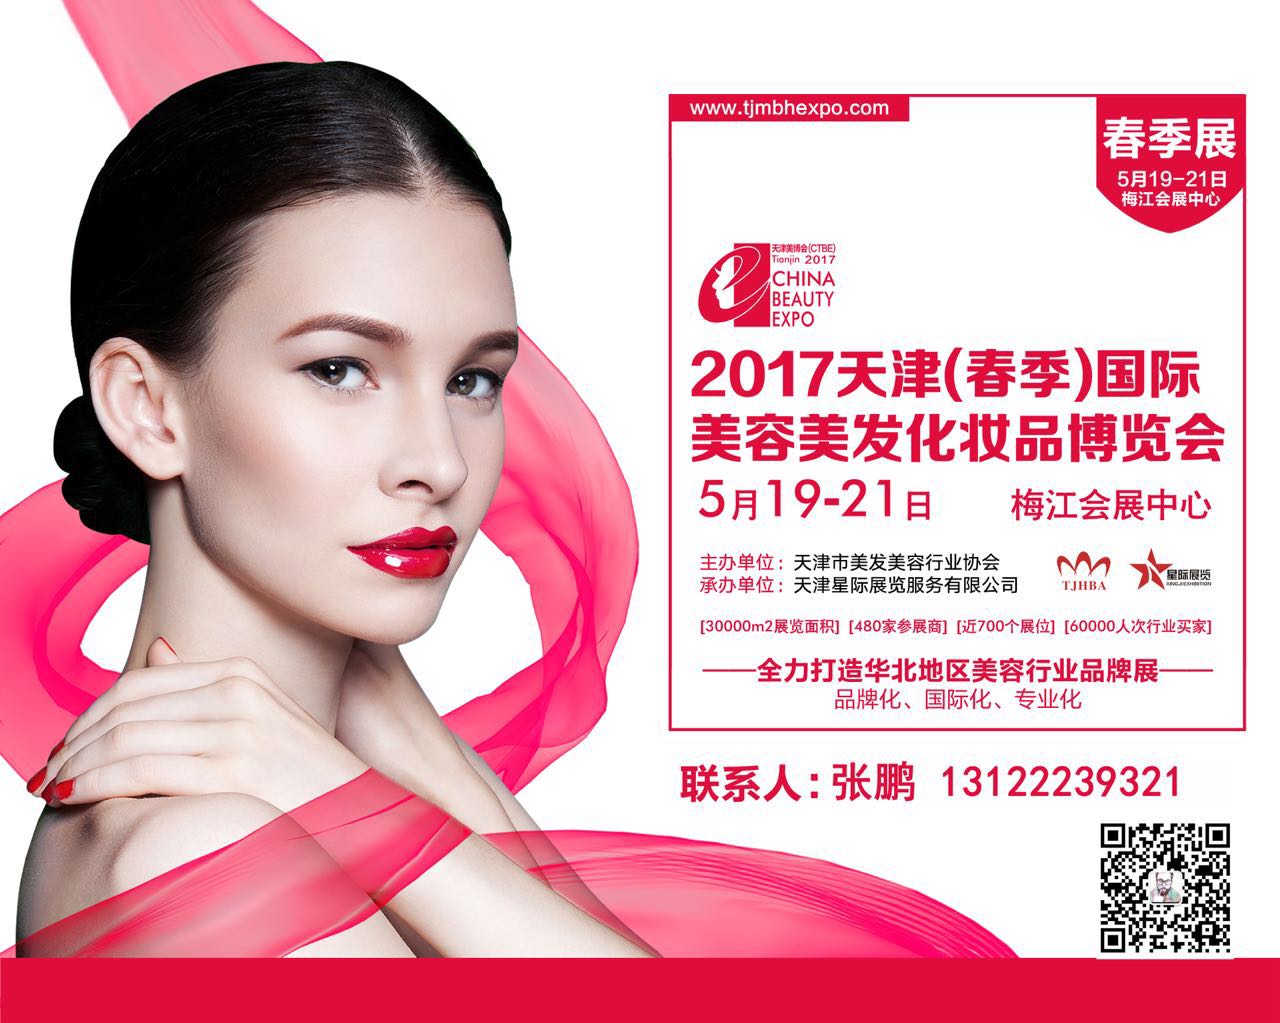 2017中国天津国际美容美发化妆品博览会(春季)